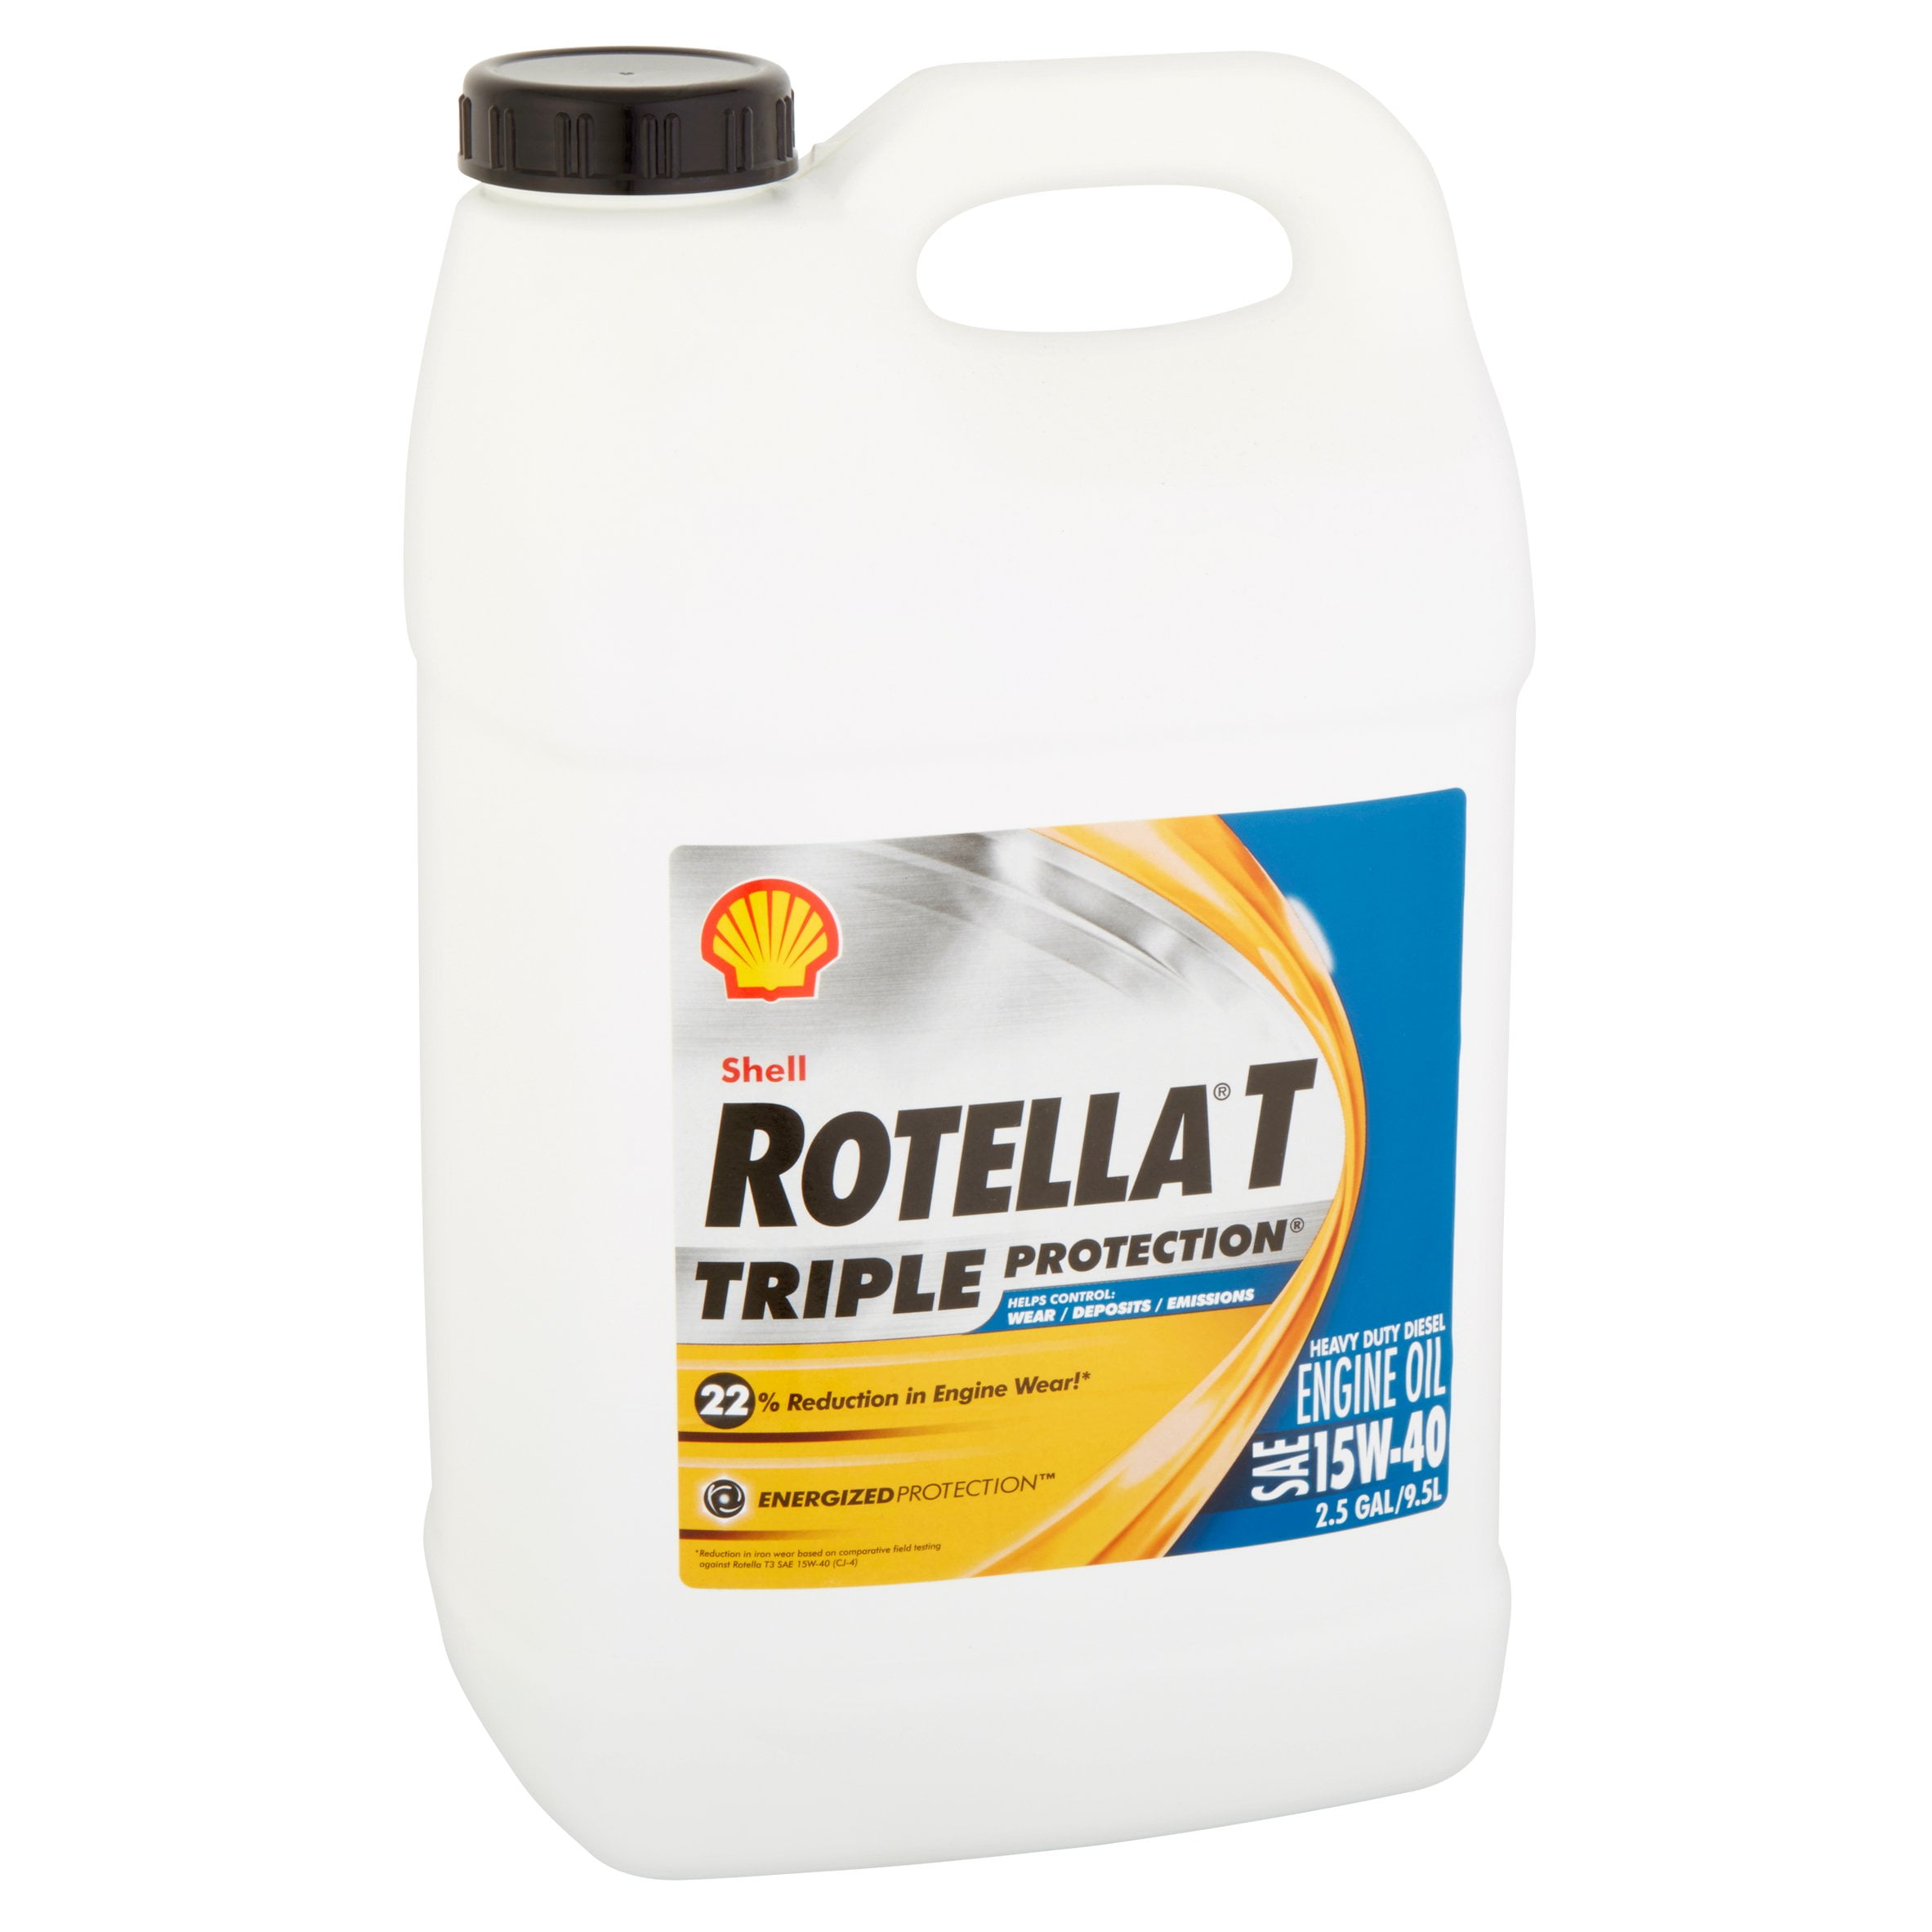 Shell Rotella T 15W-40 Heavy Duty Diesel Oil, 2.5 Gallon - 3